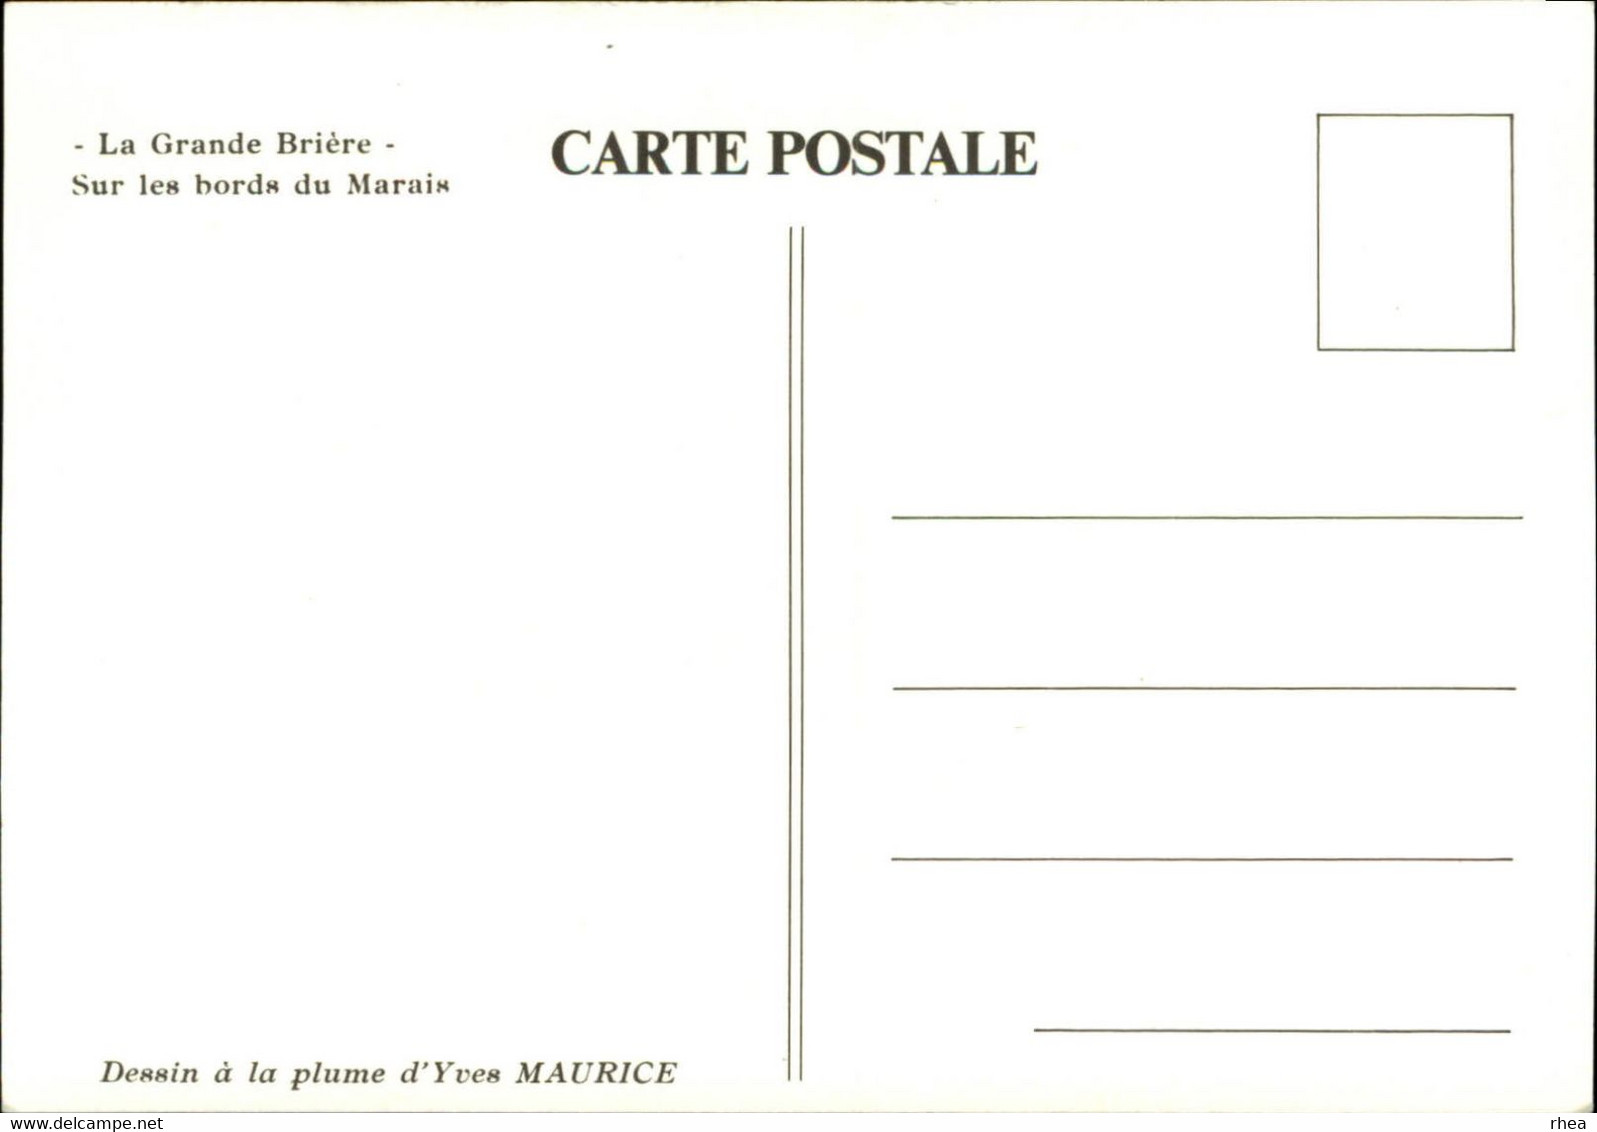 44 - SAINT-LYPHARD - LA GRANDE BRIERE - 6 cartes - dessin à la plume d'Yves Maurice - Kerhinet -